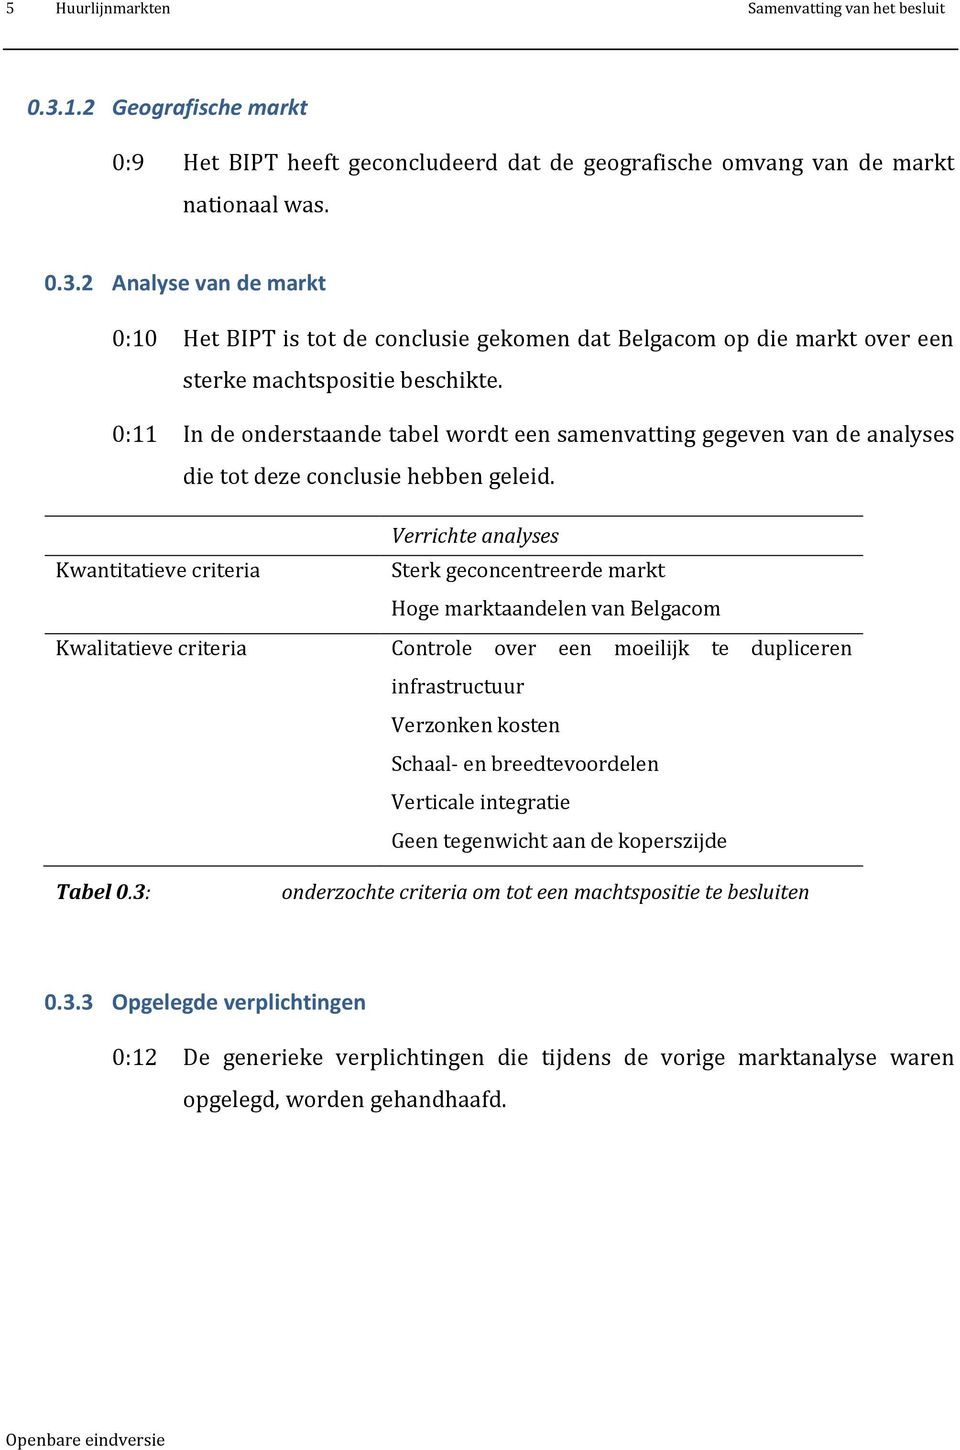 Verrichte analyses Kwantitatieve criteria Sterk geconcentreerde markt Hoge marktaandelen van Belgacom Kwalitatieve criteria Controle over een moeilijk te dupliceren infrastructuur Verzonken kosten